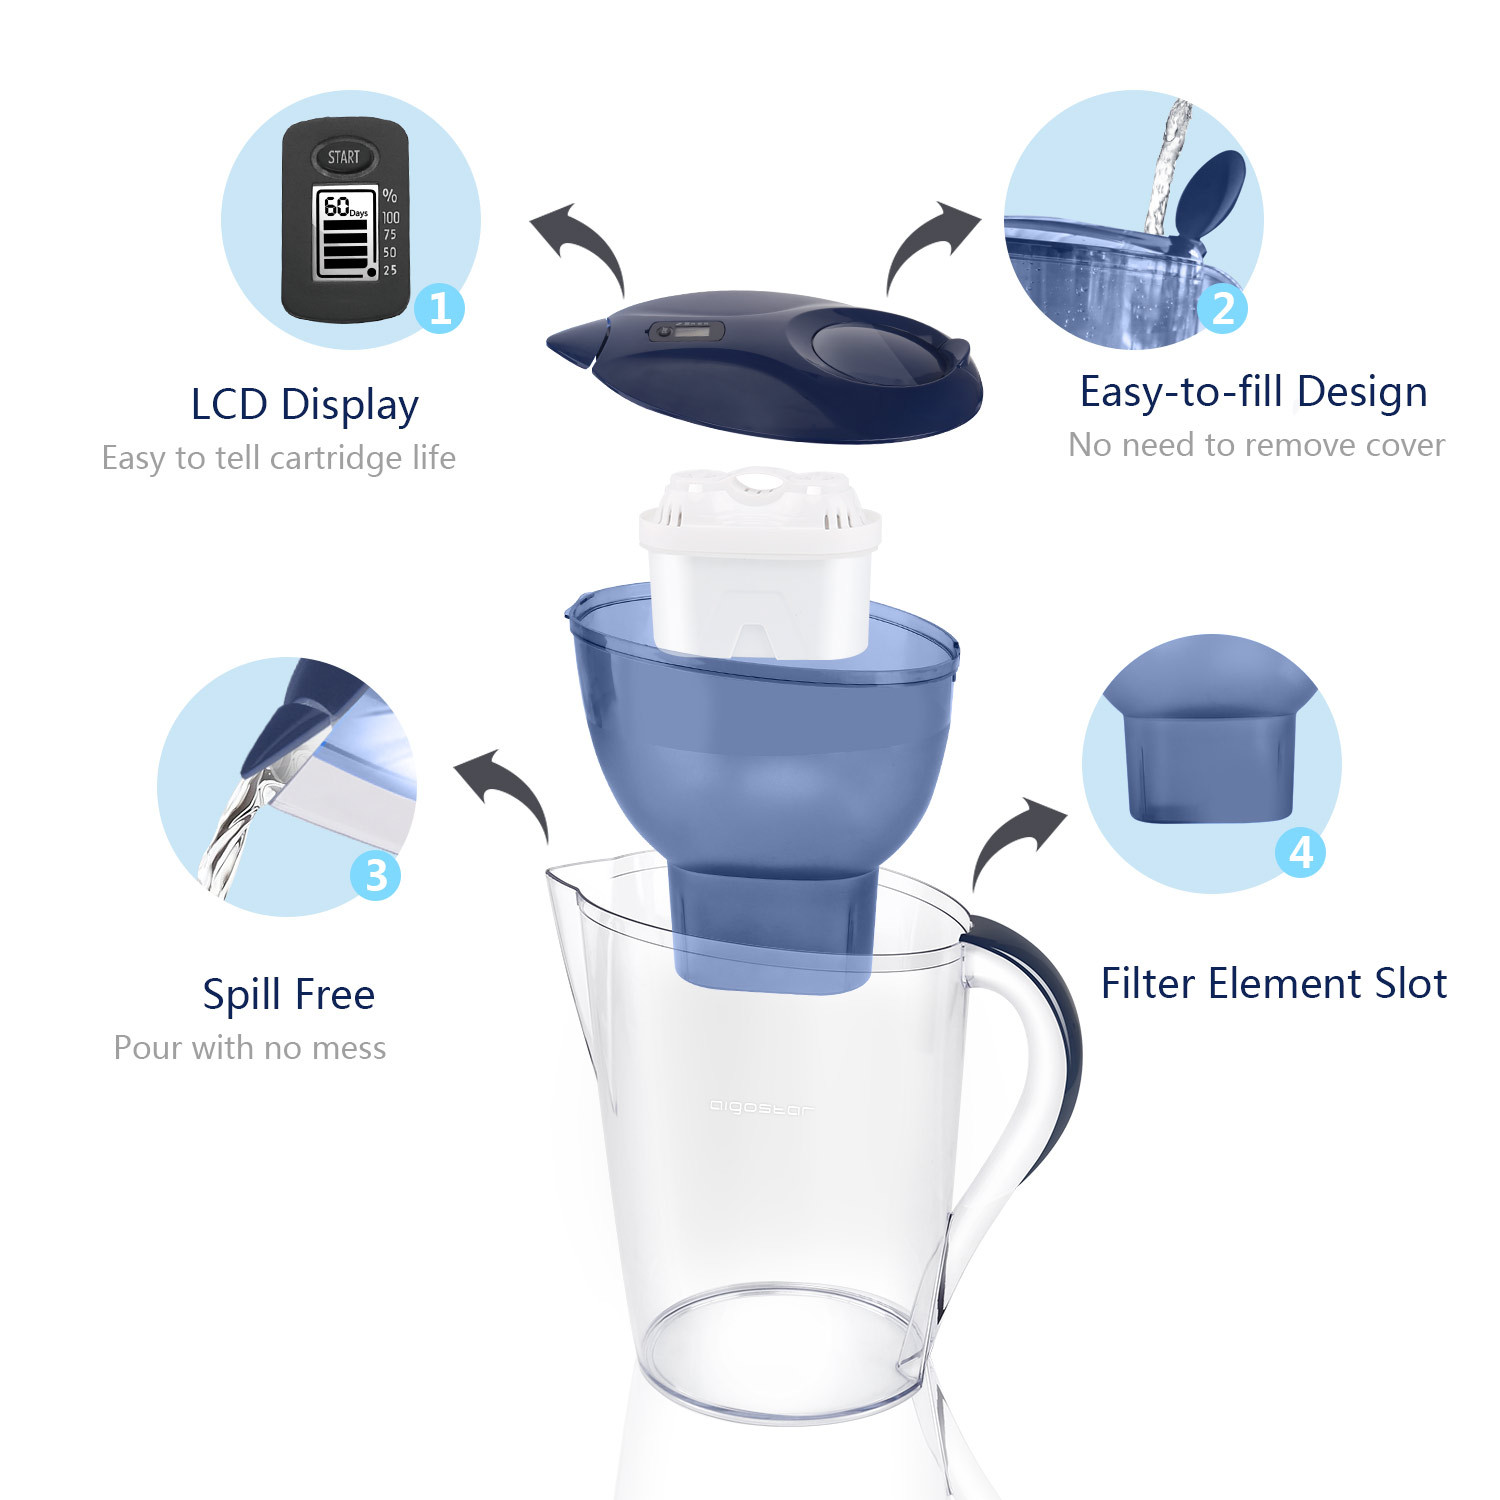 Aigostar Pure 30LDV - Wasserfilter Blau inkl 3 Filterkartuschen Filter Starterpaket zur Reduzierung von Kalk, Chlor & geschmacksstörenden Stoffen im Wasser 3,5L